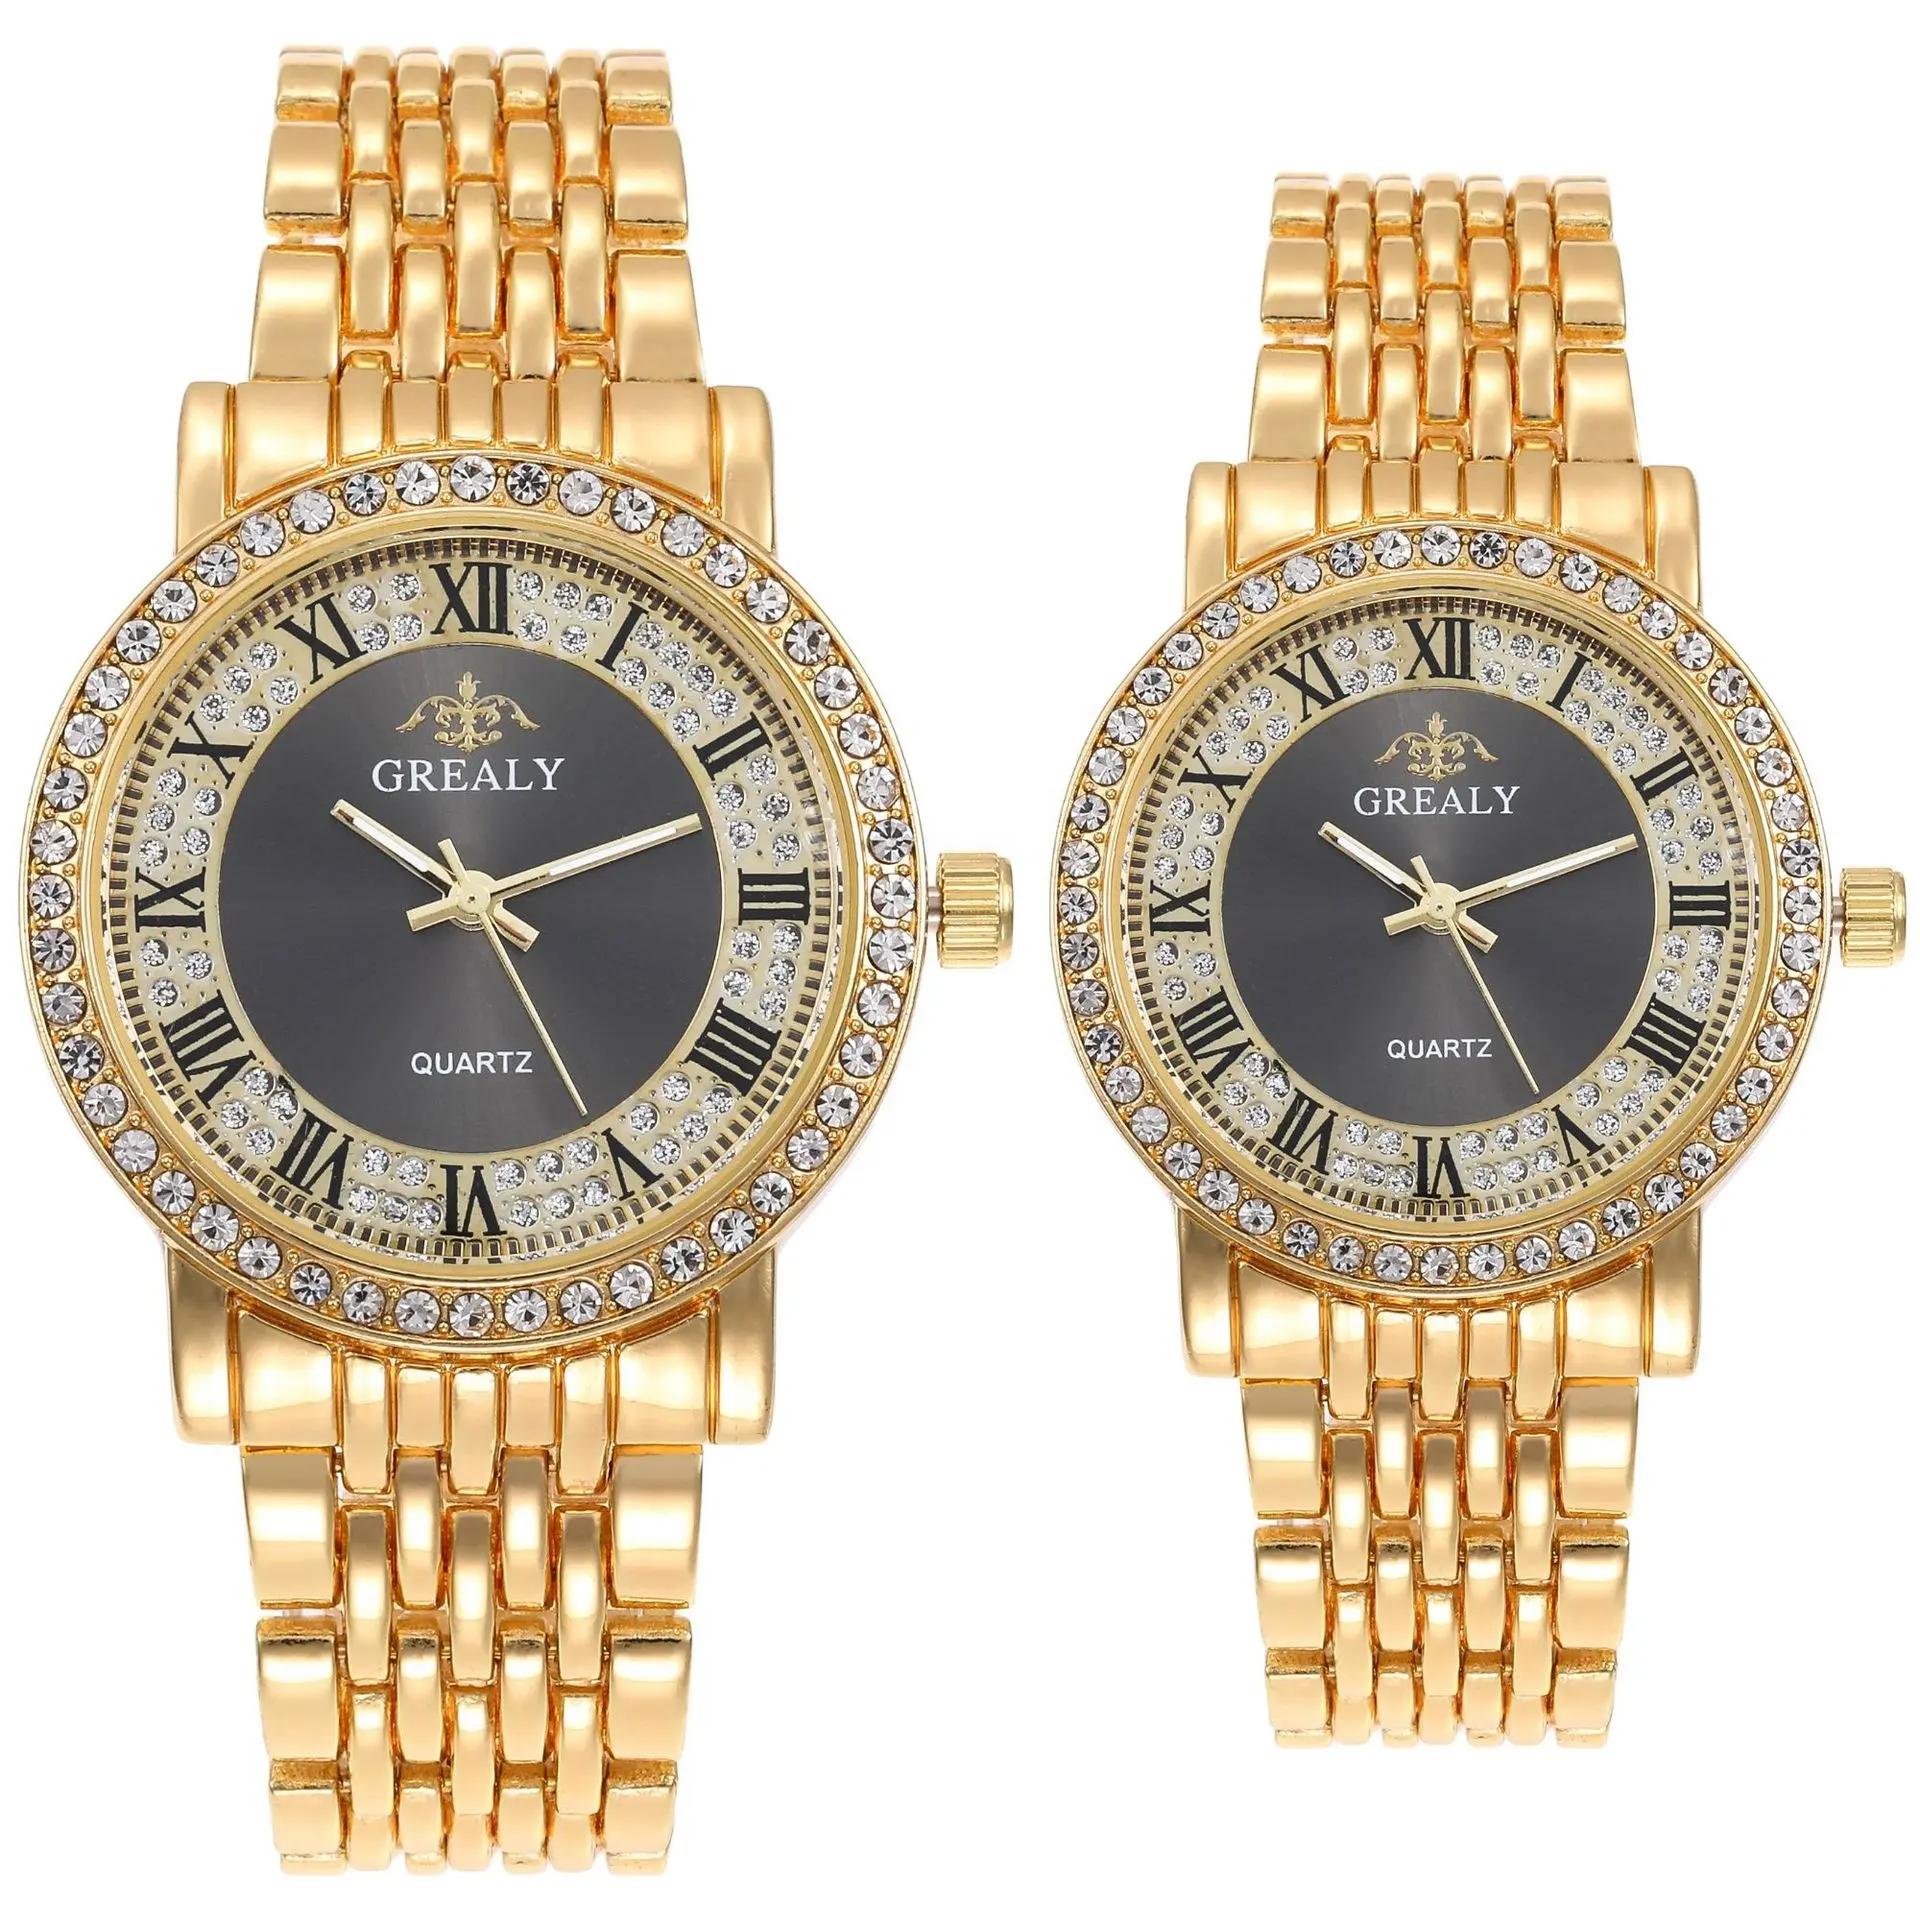 หรูหราทองเพชรคู่นาฬิกาชุดสำหรับคนรักควอตซ์คู่นาฬิกาผู้ชายผู้หญิงนาฬิกาข้อมือ